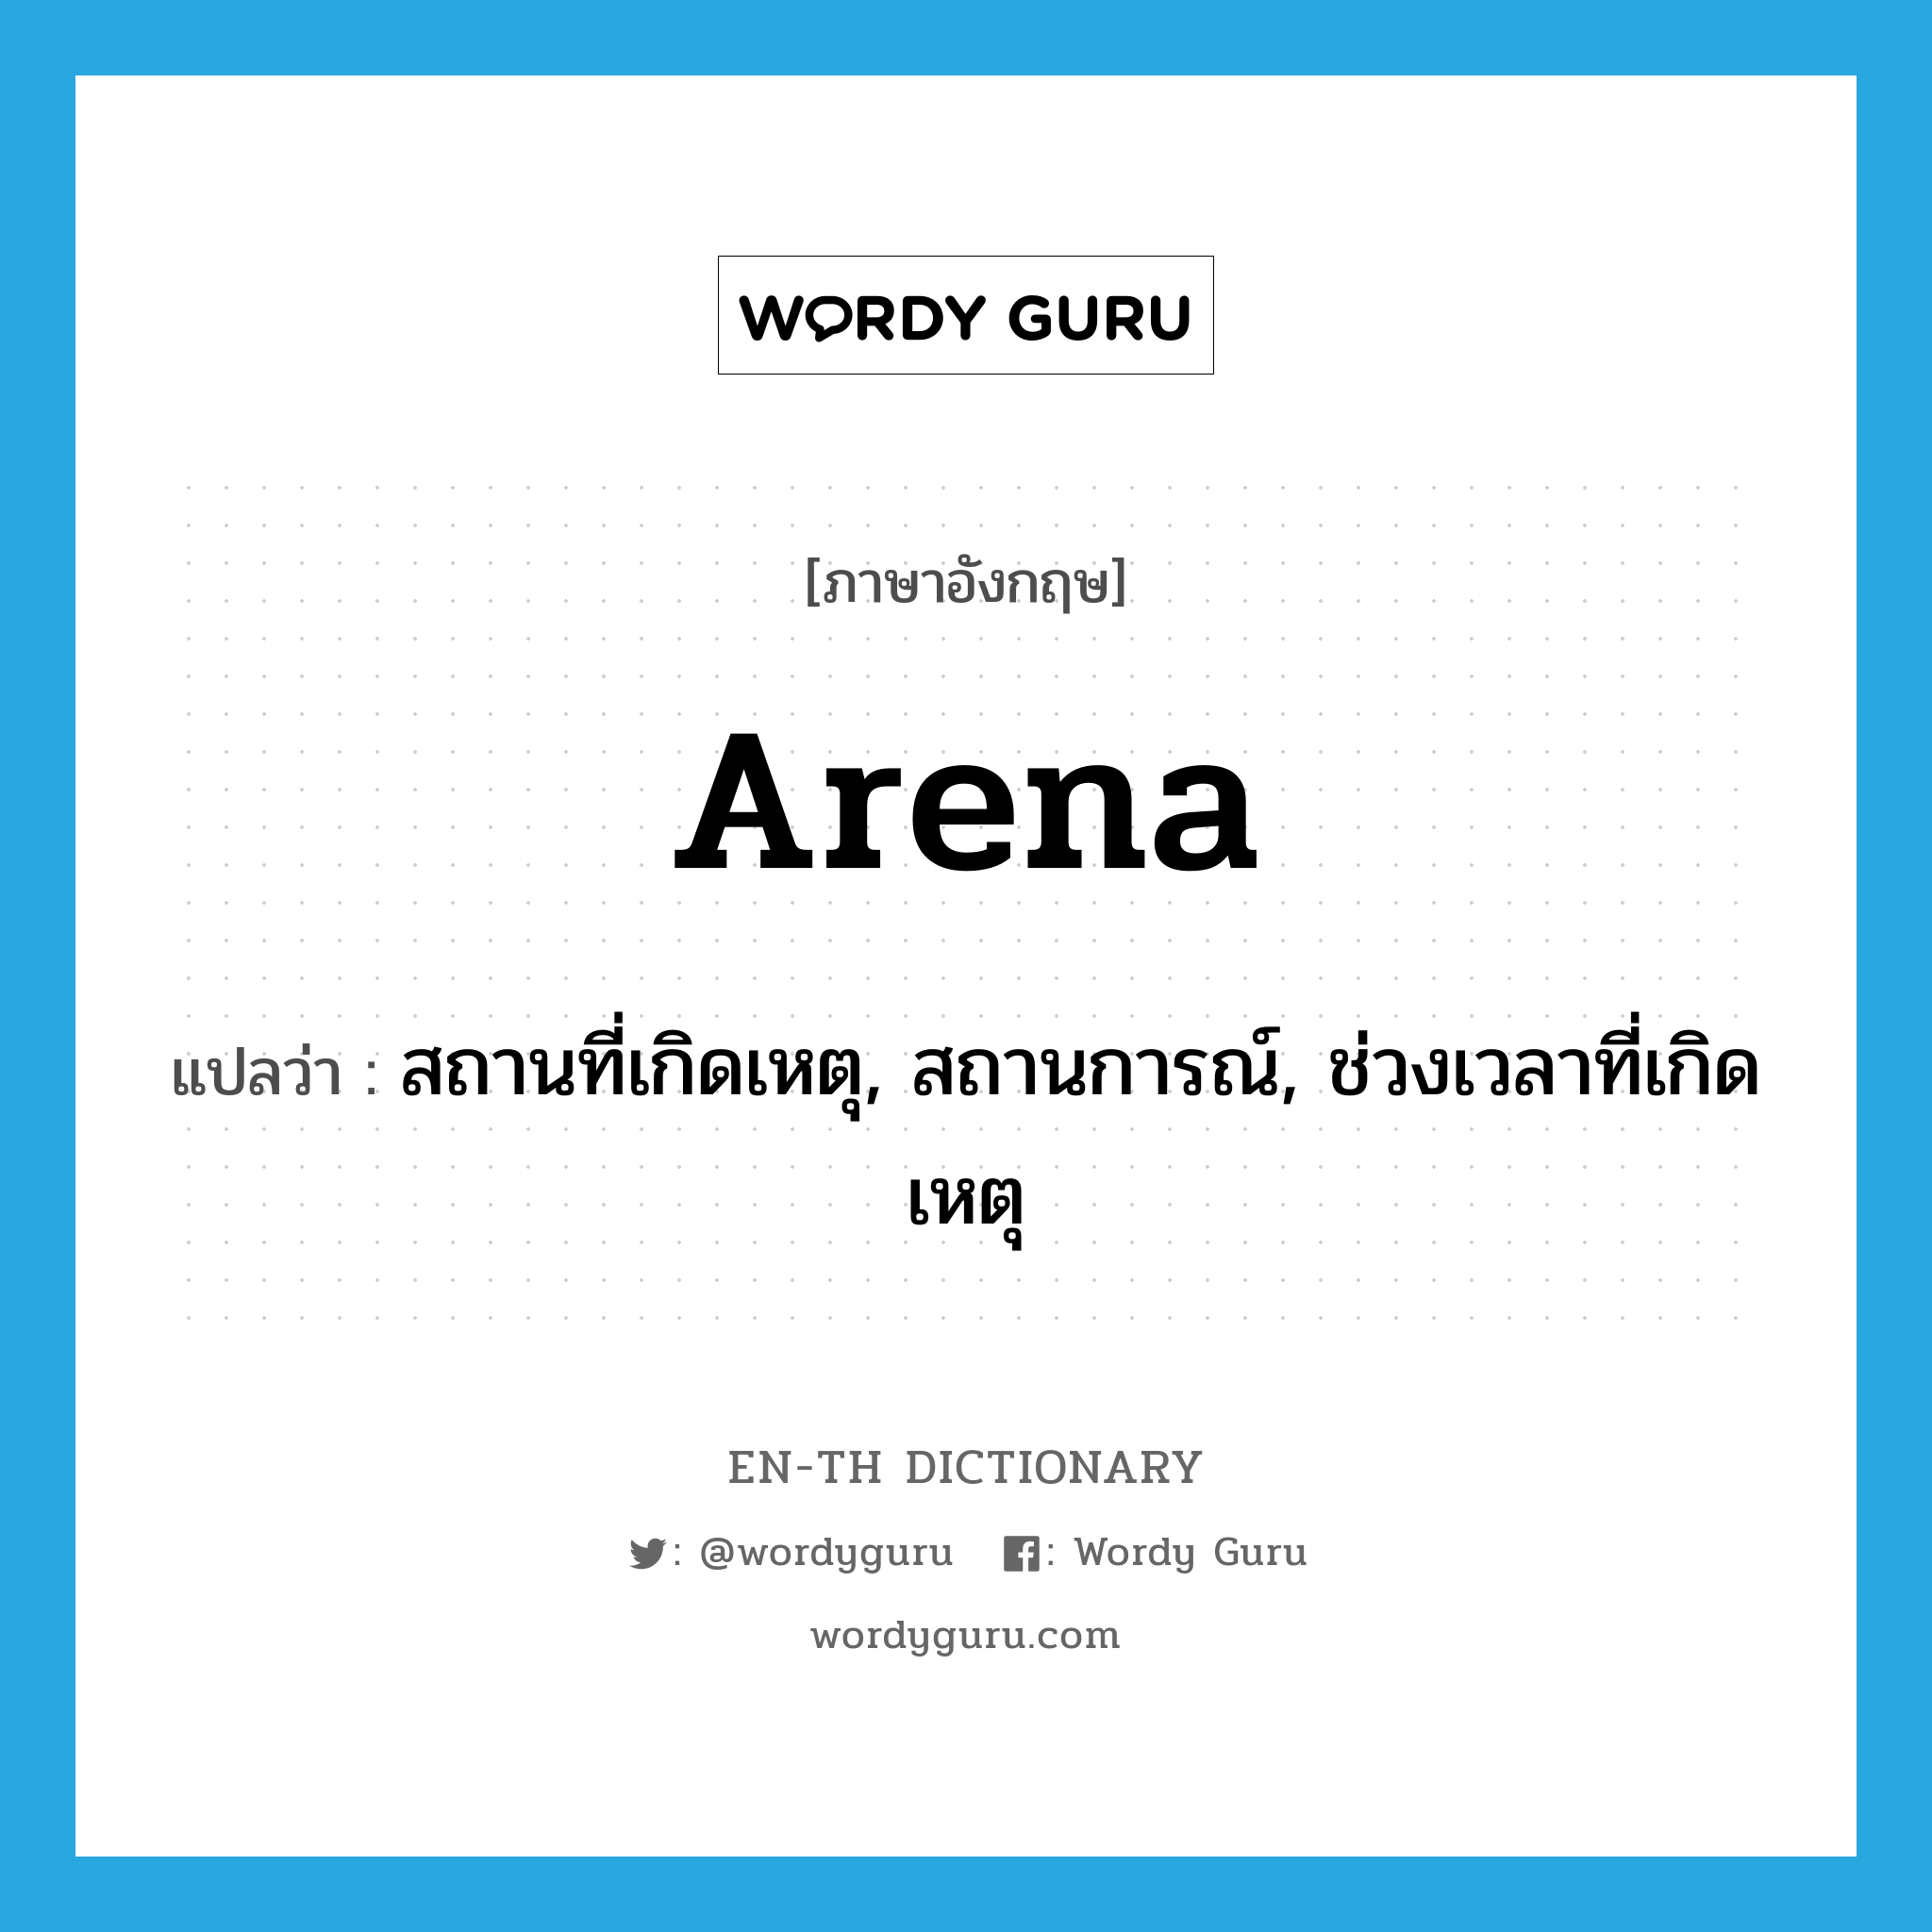 arena แปลว่า?, คำศัพท์ภาษาอังกฤษ arena แปลว่า สถานที่เกิดเหตุ, สถานการณ์, ช่วงเวลาที่เกิดเหตุ ประเภท N หมวด N